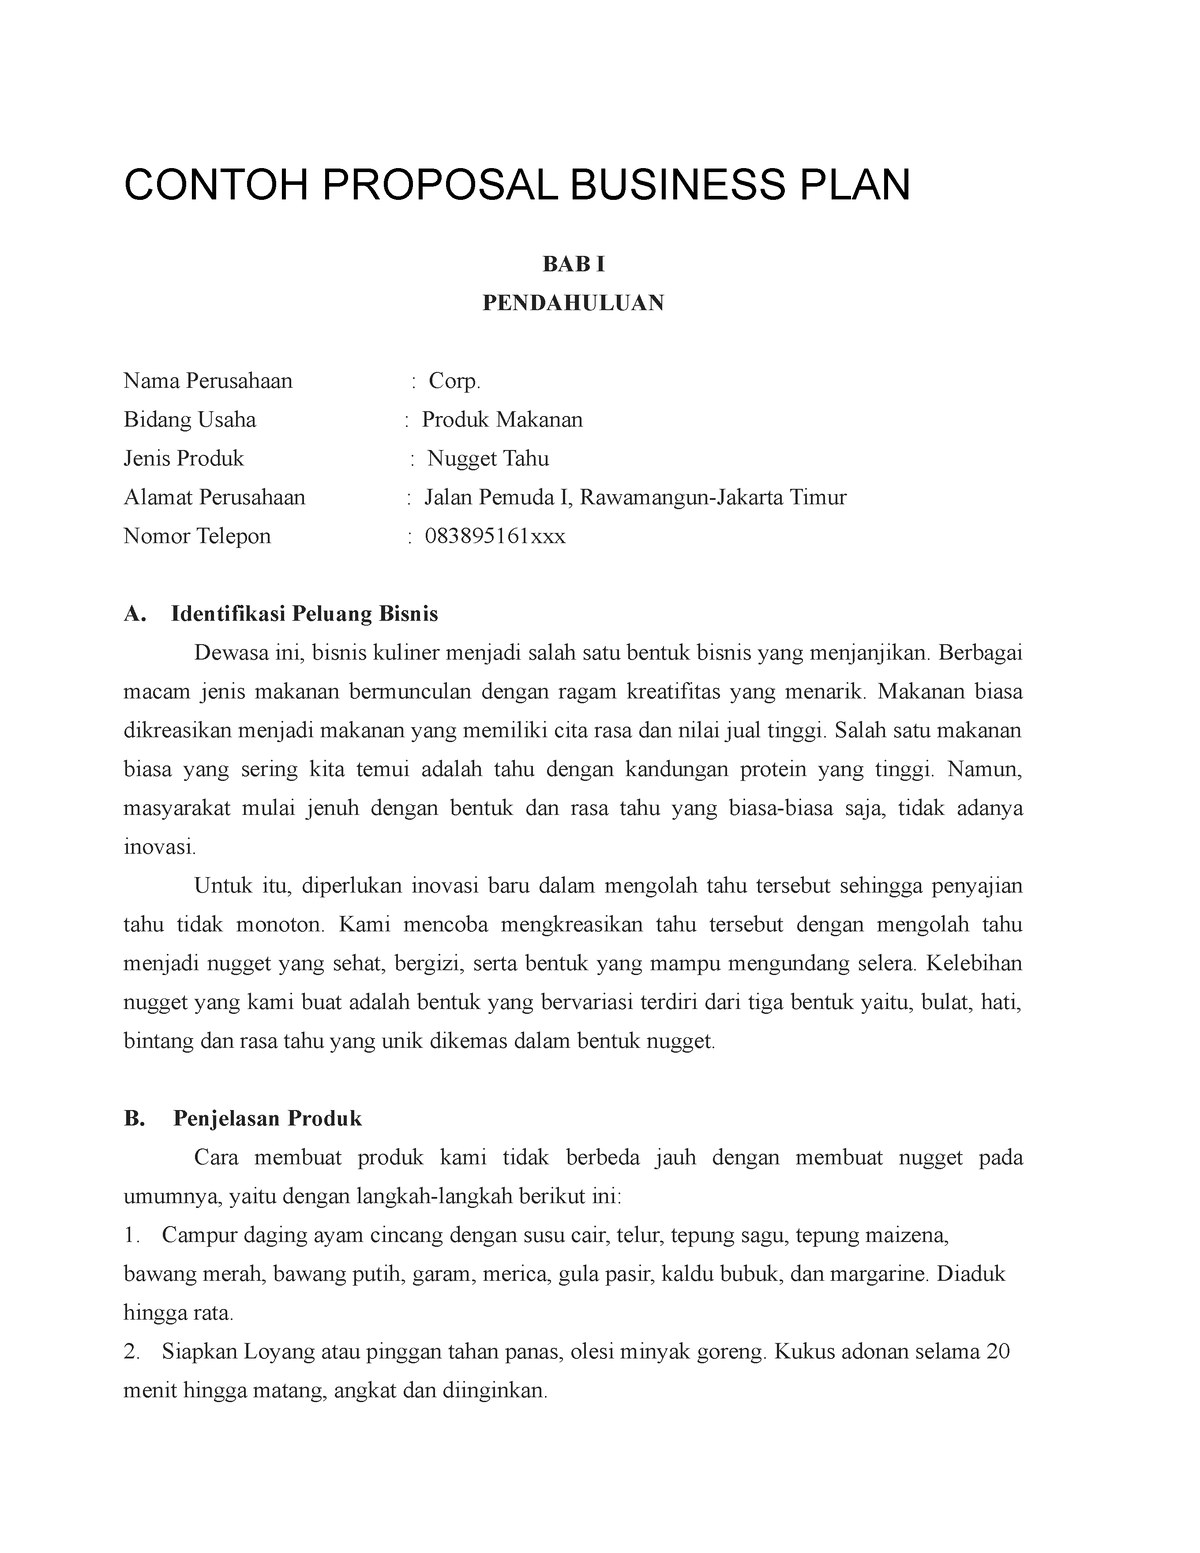 contoh-proposal-business-plan-contoh-proposal-business-plan-bab-i